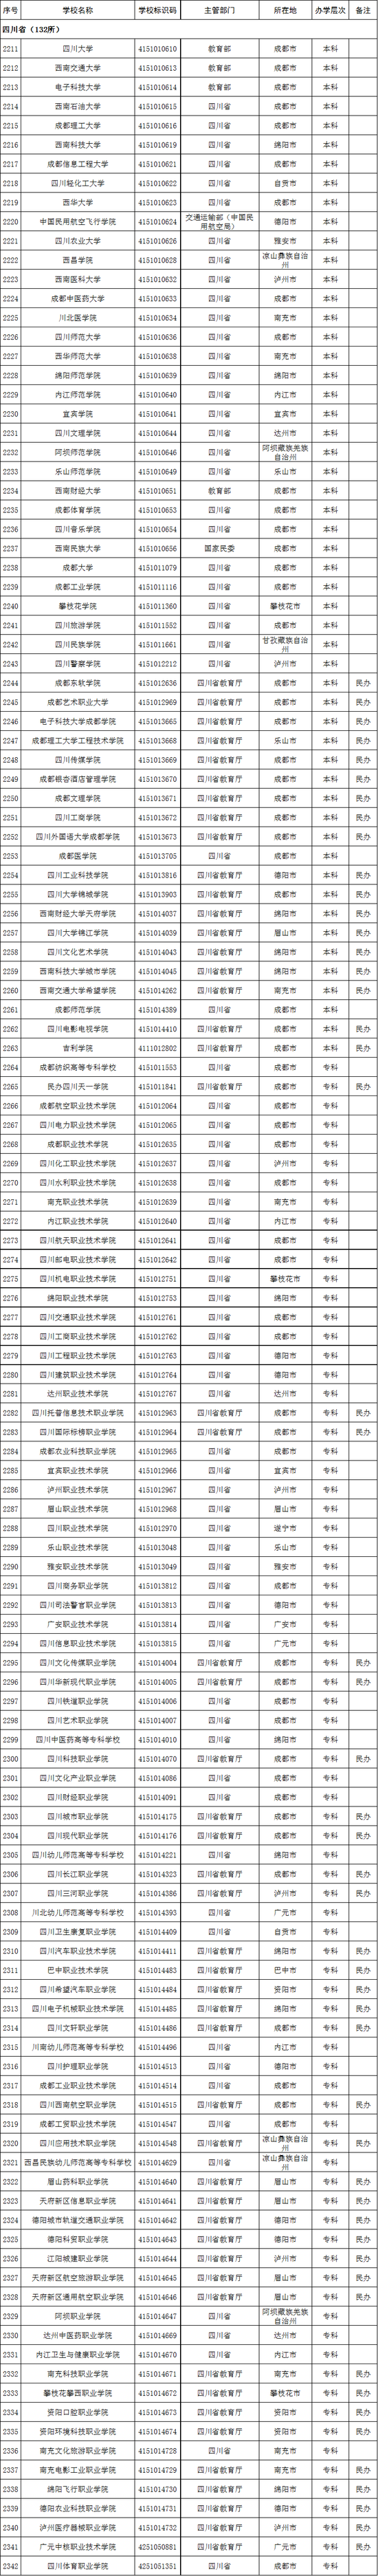 2020年四川省高校名单(132所)